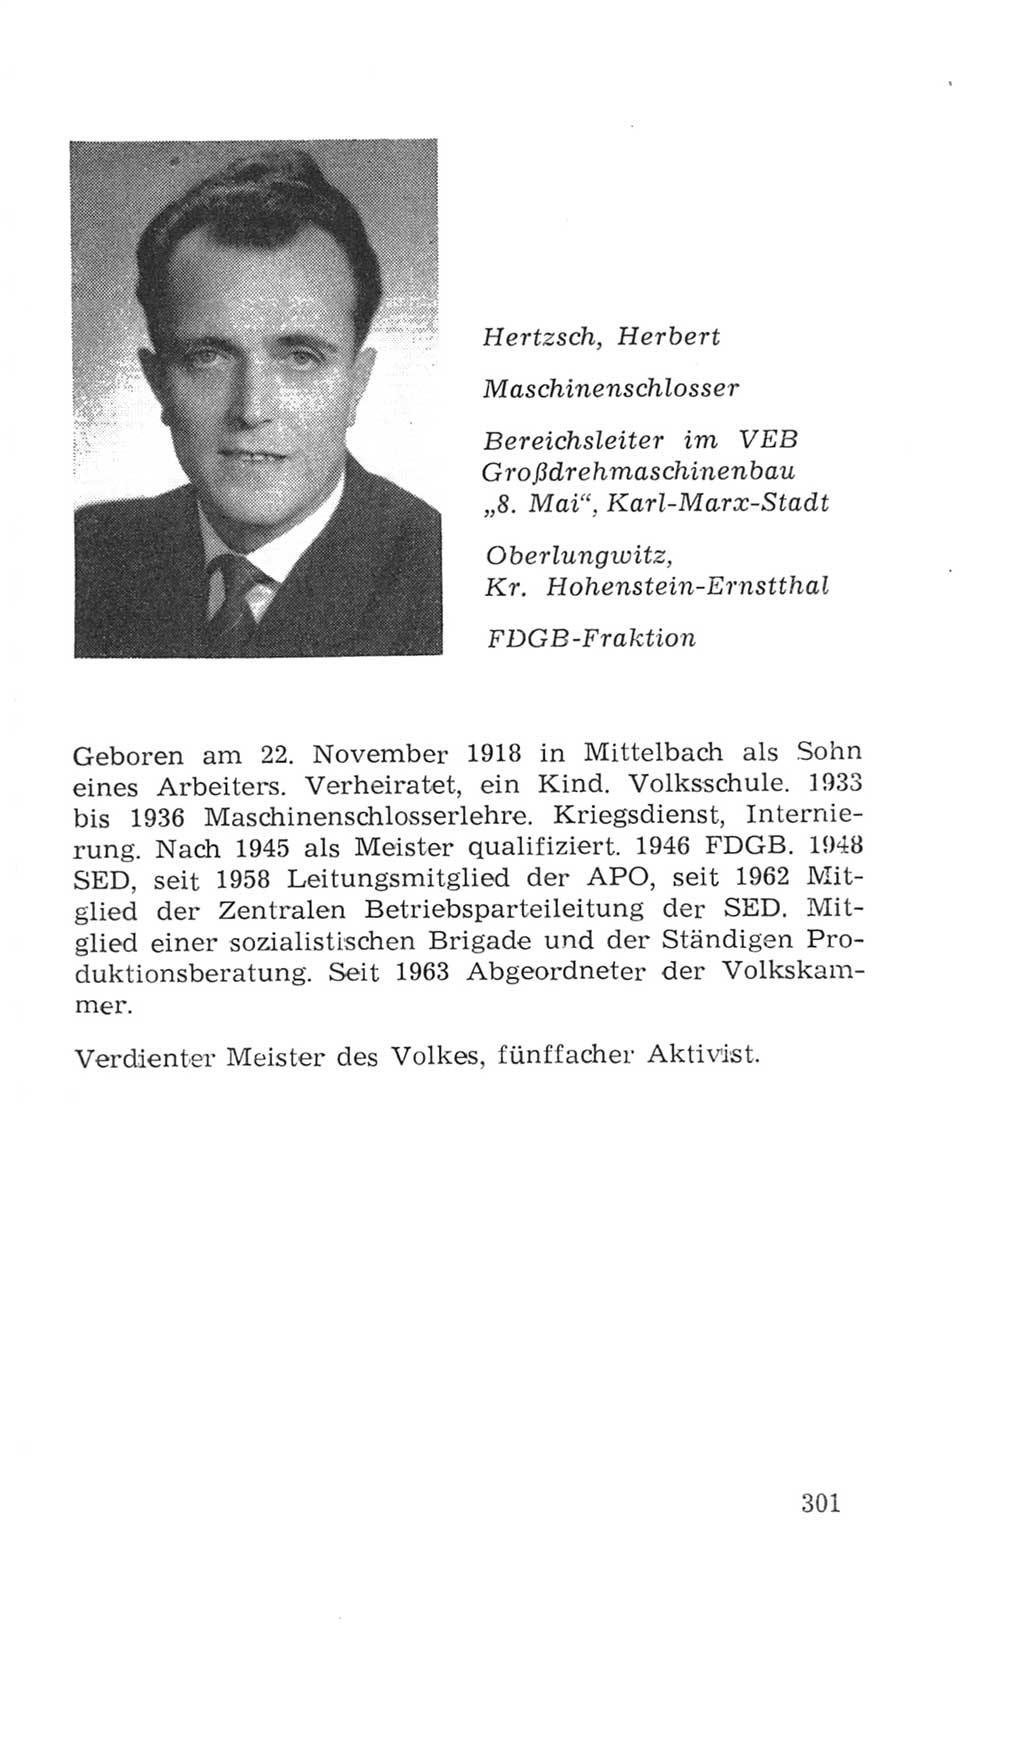 Volkskammer (VK) der Deutschen Demokratischen Republik (DDR), 4. Wahlperiode 1963-1967, Seite 301 (VK. DDR 4. WP. 1963-1967, S. 301)